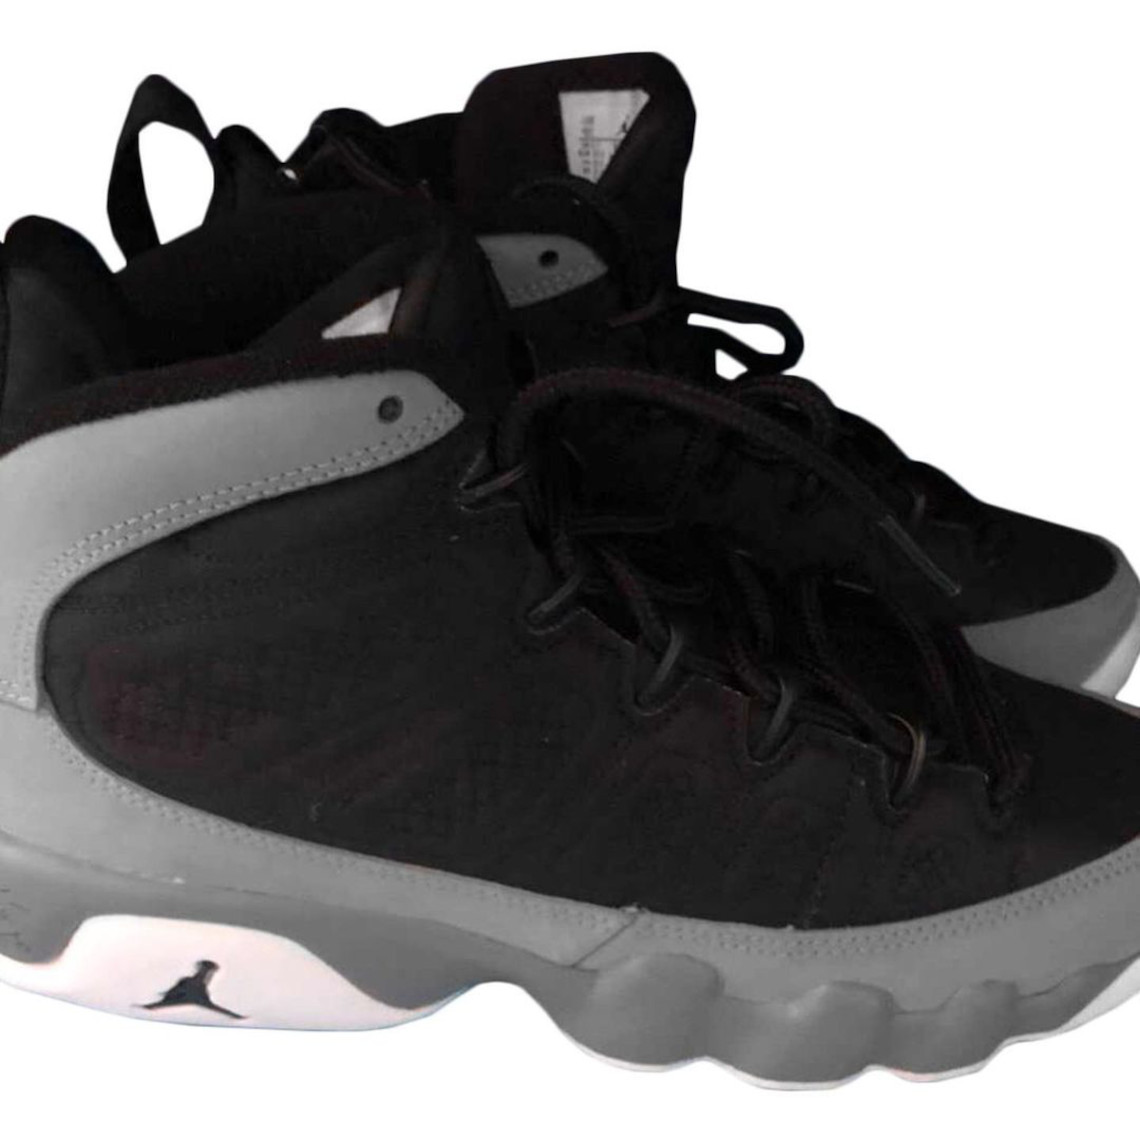 Die Jordan 4 Sneaker haben auf jeden Fall das Potenzial zum Schuh des Jahres Particle Grey Ct8019 060 1